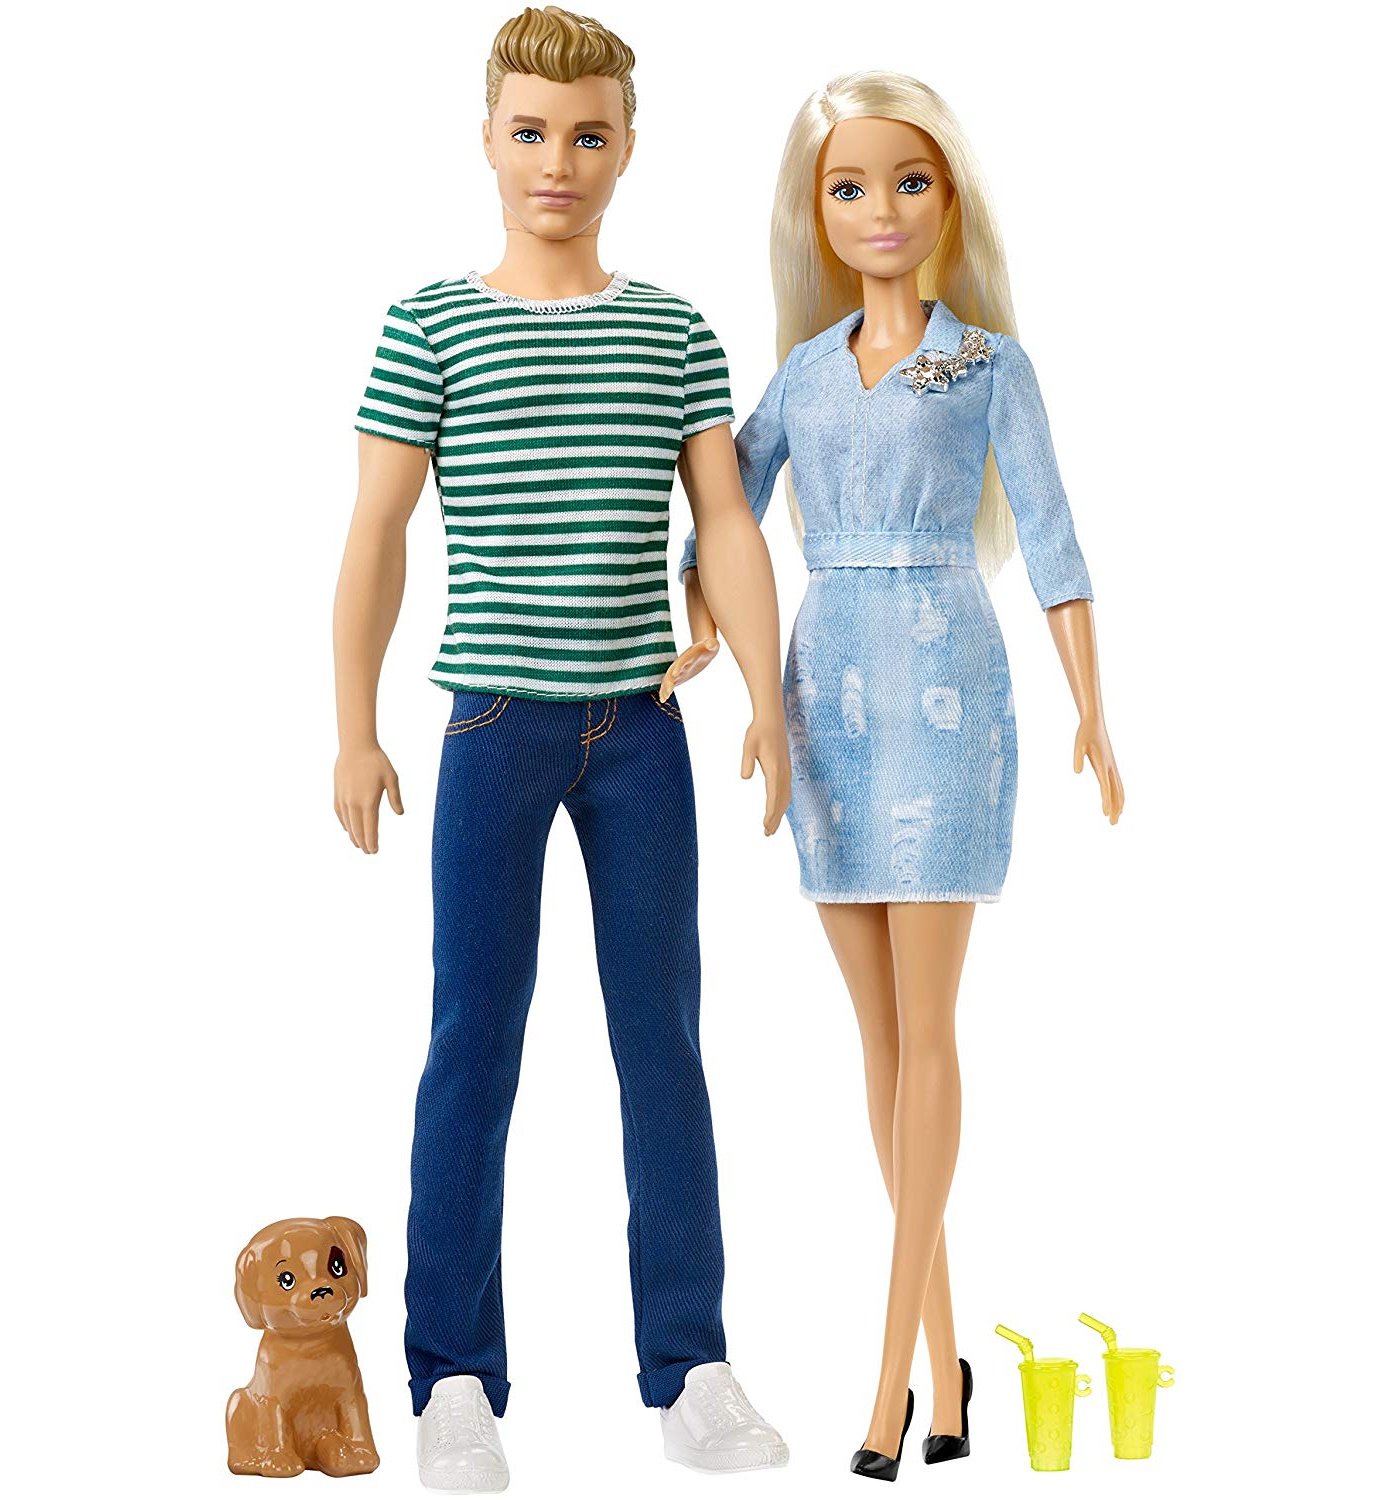 Kaufe Barbie - Ken and Barbie with Dog set (FTB72)